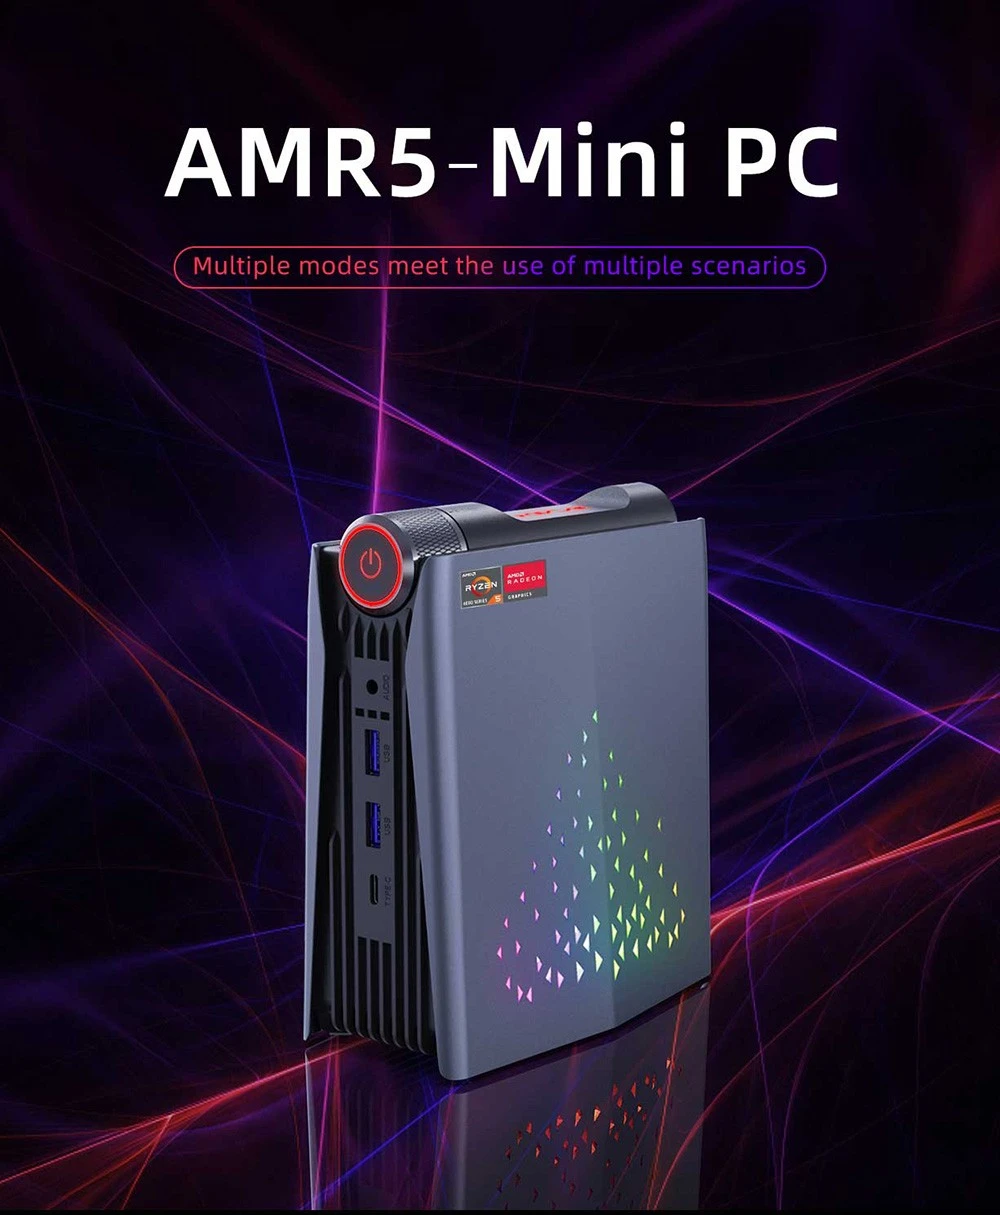 Le mini PC OUVIS AMR5 à 284,99 € (16Go RAM, 512Go SSD) et les